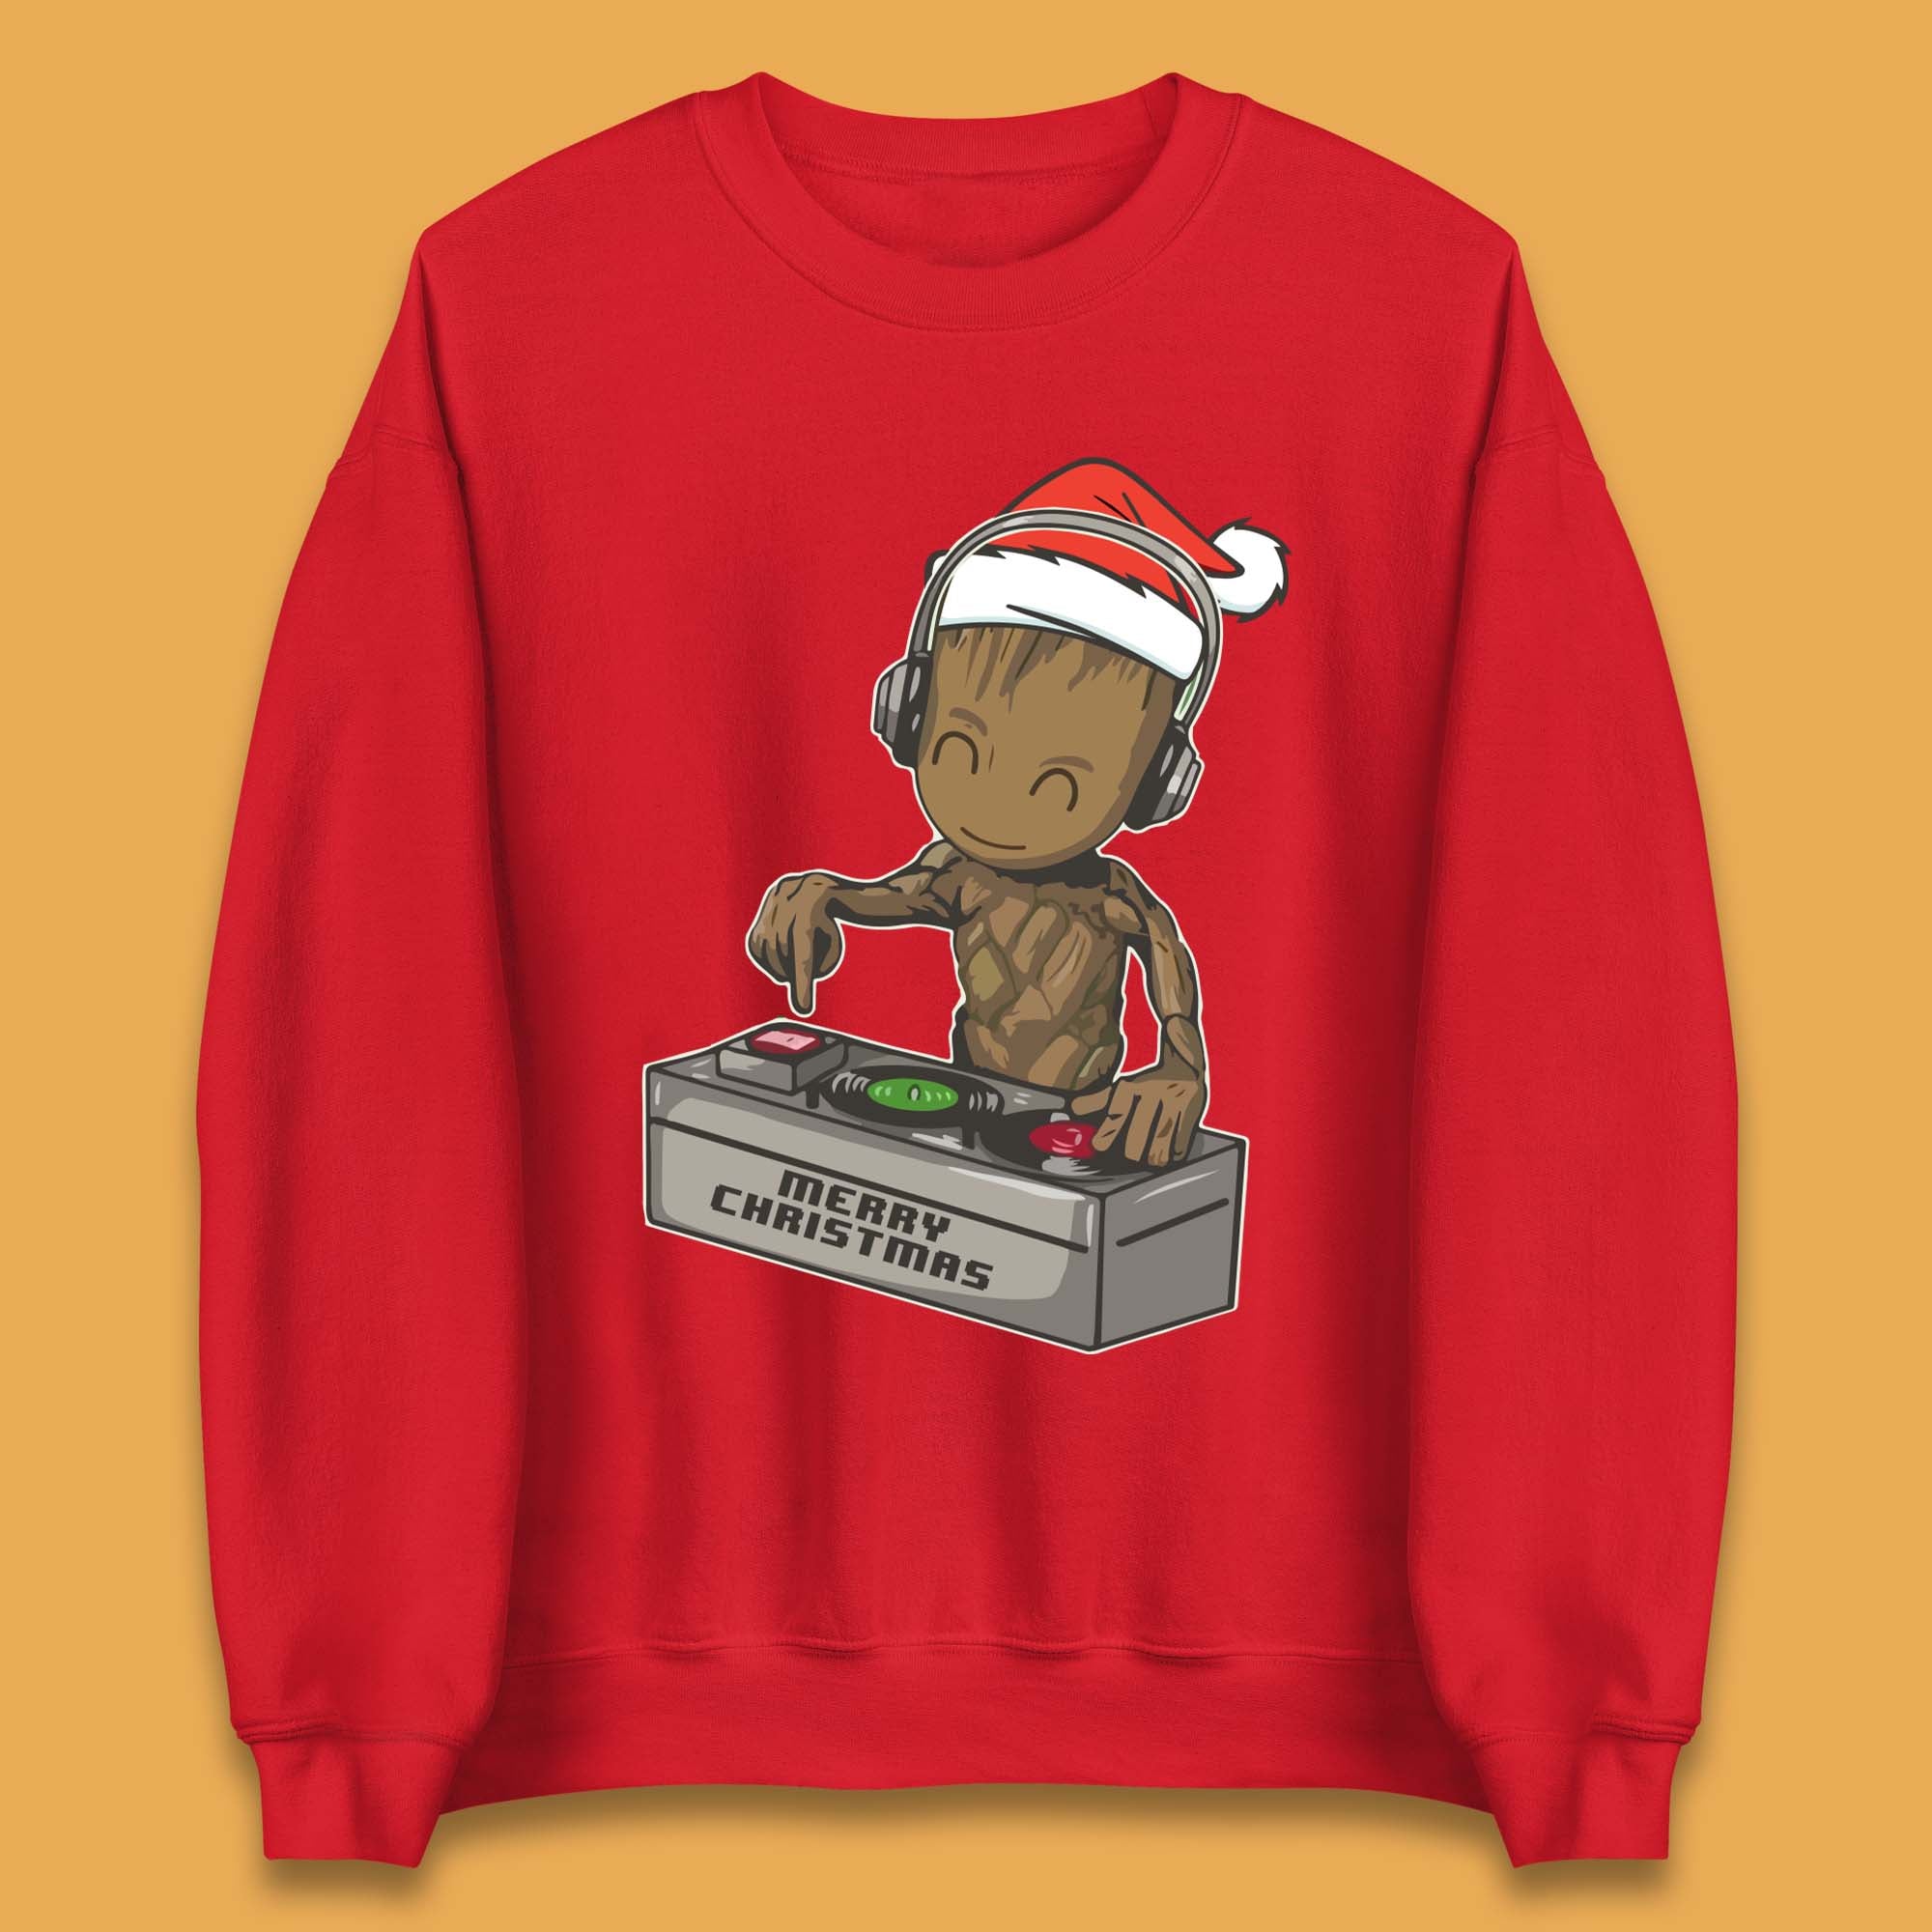 Baby Groot DJ Christmas Unisex Sweatshirt